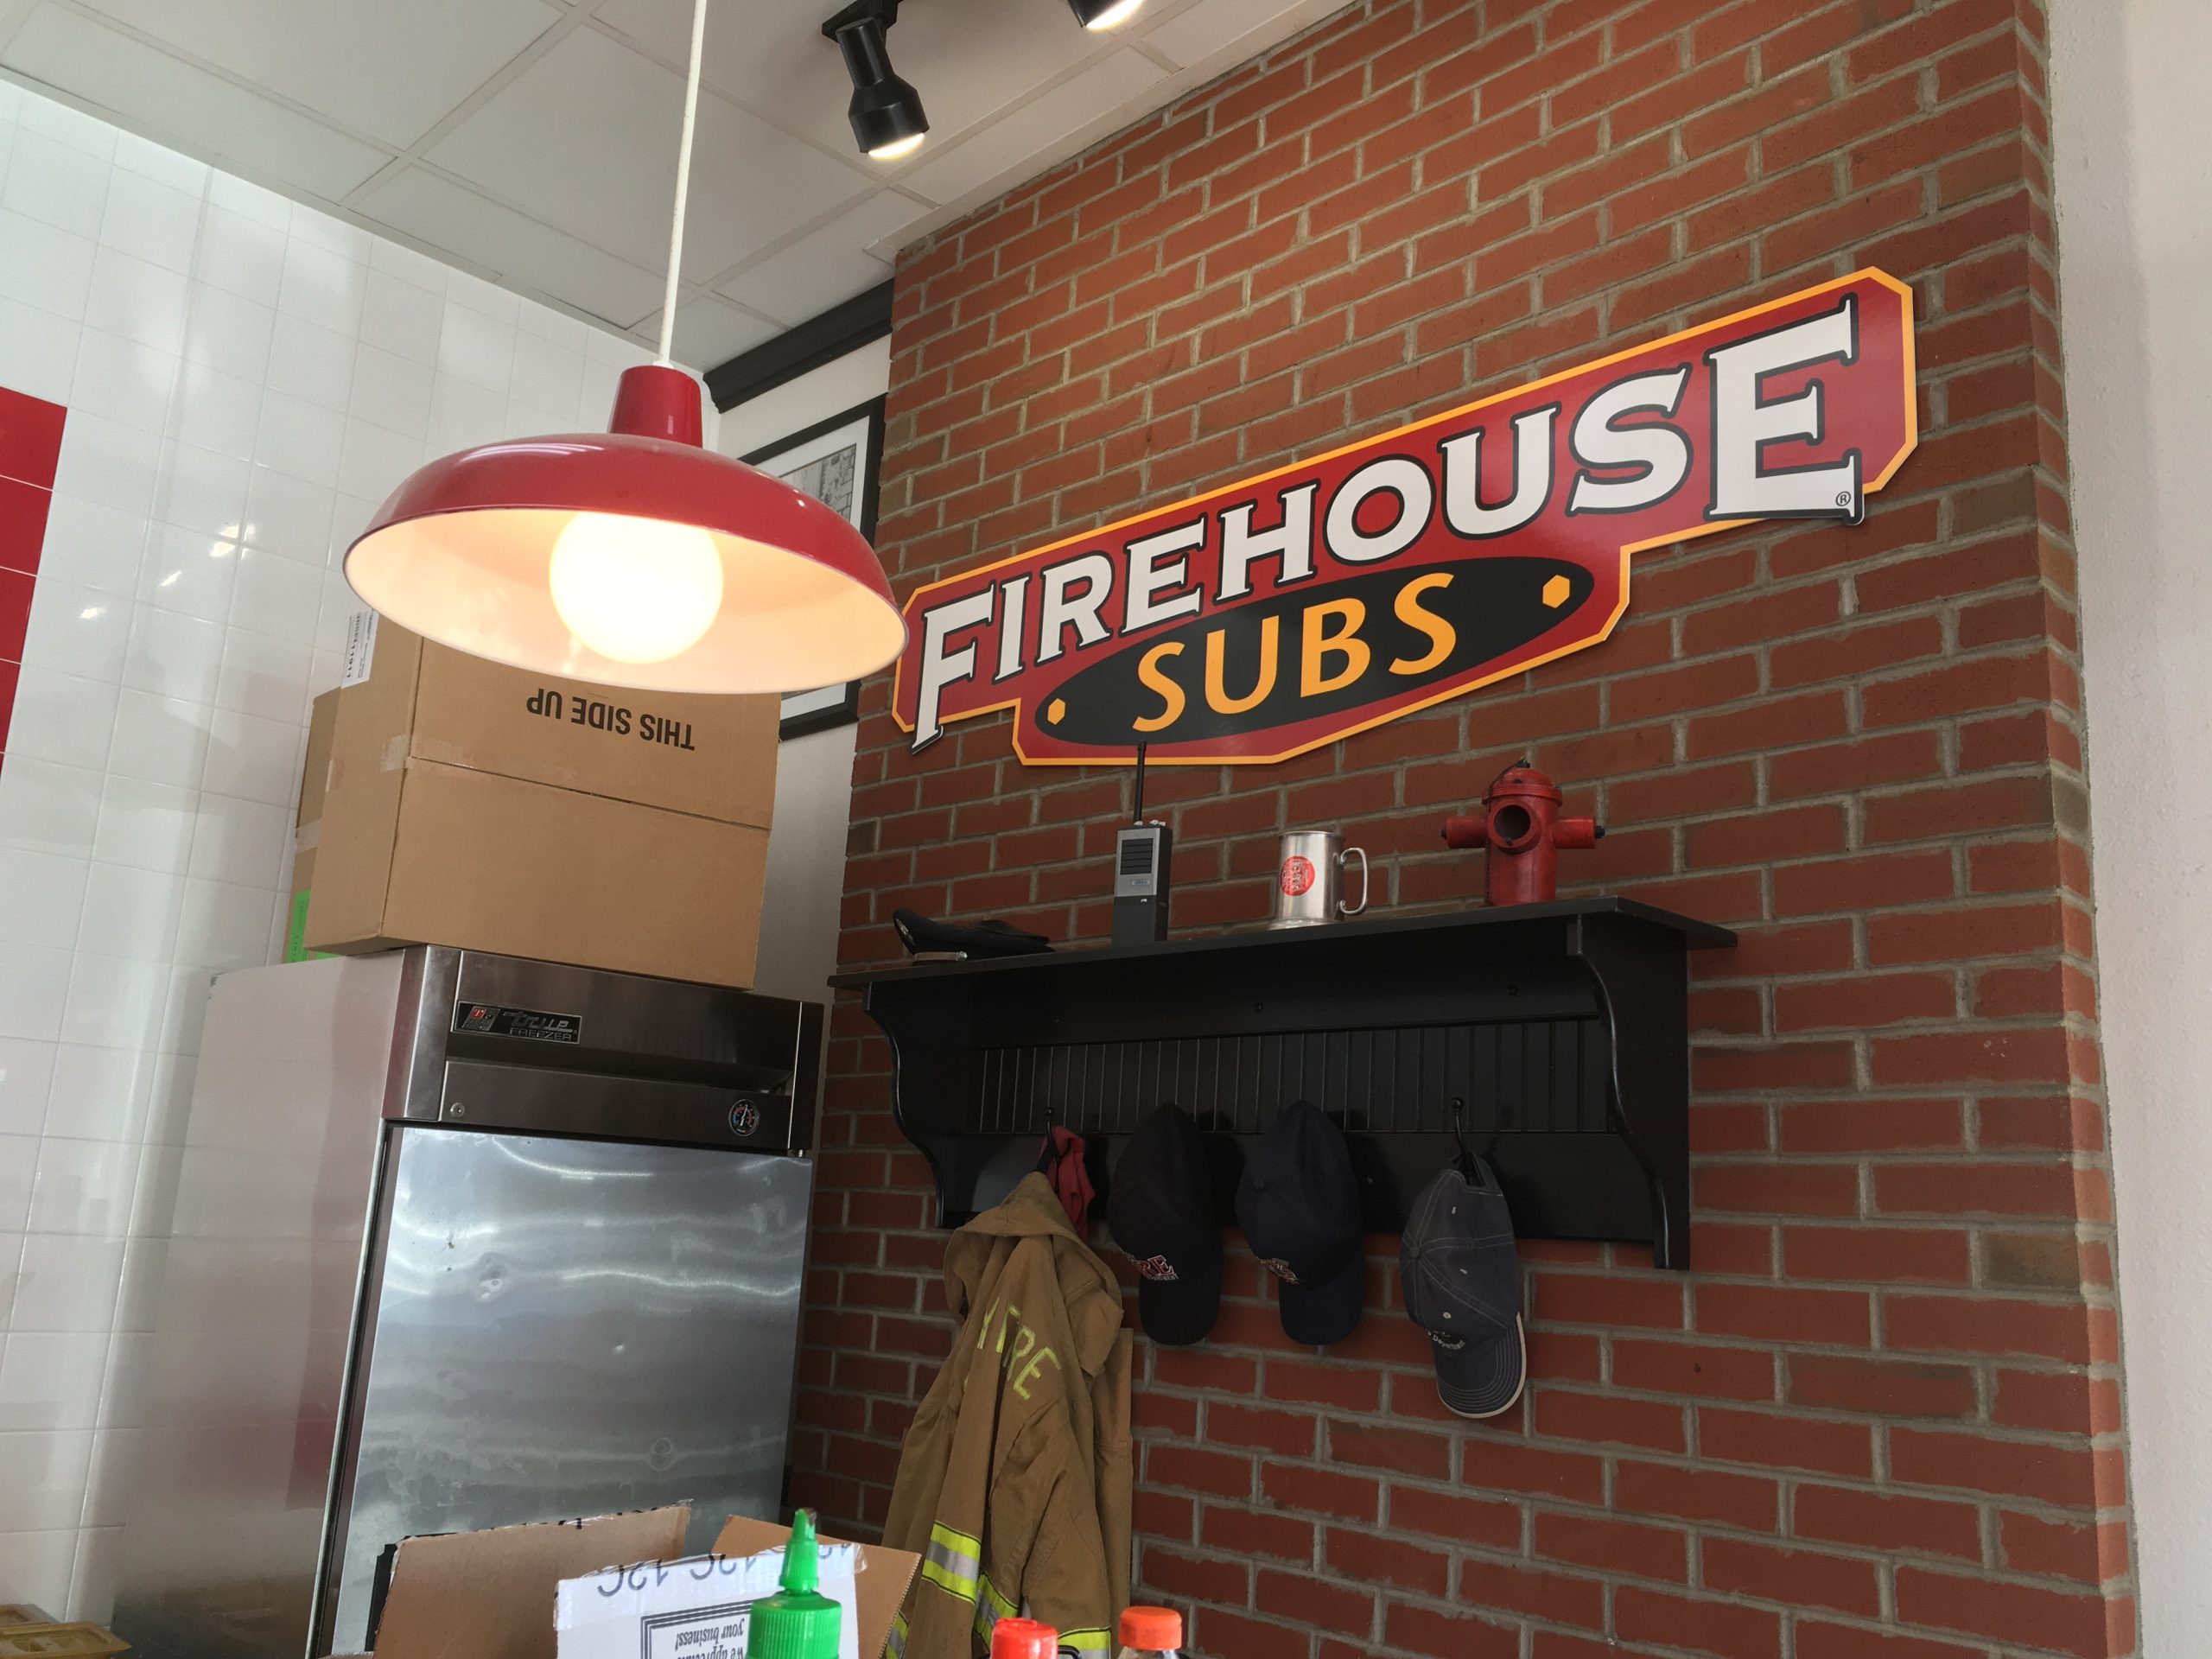 Burger King Parent Buys Firehouse Subs